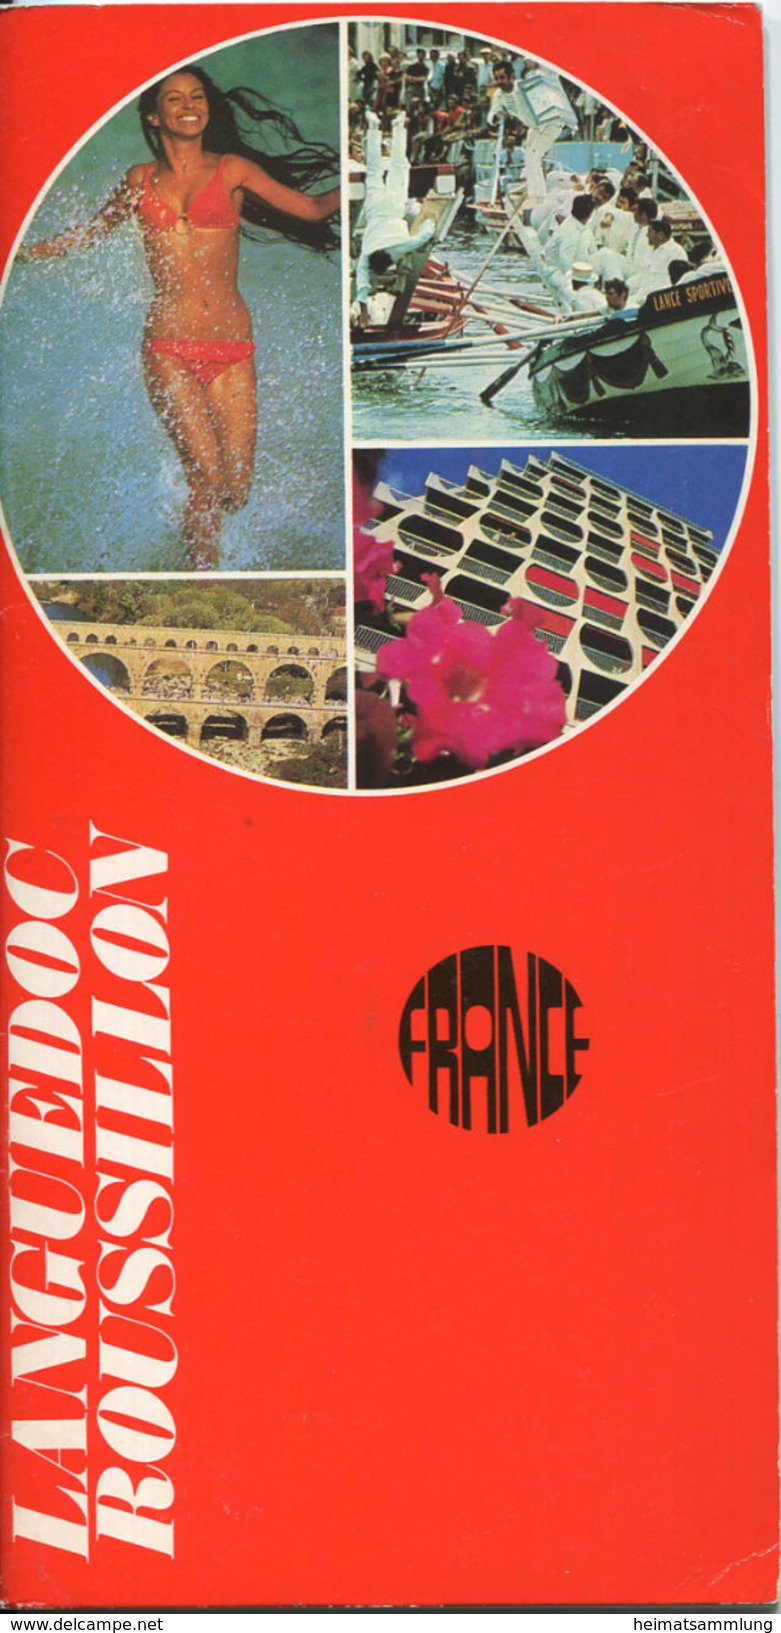 France - Languedoc Roussillon 1977 - 50 Seiten Mit Vielen Abbildungen - Beiliegend Karte Languedoc Roussillon - Guide De - Dépliants Touristiques